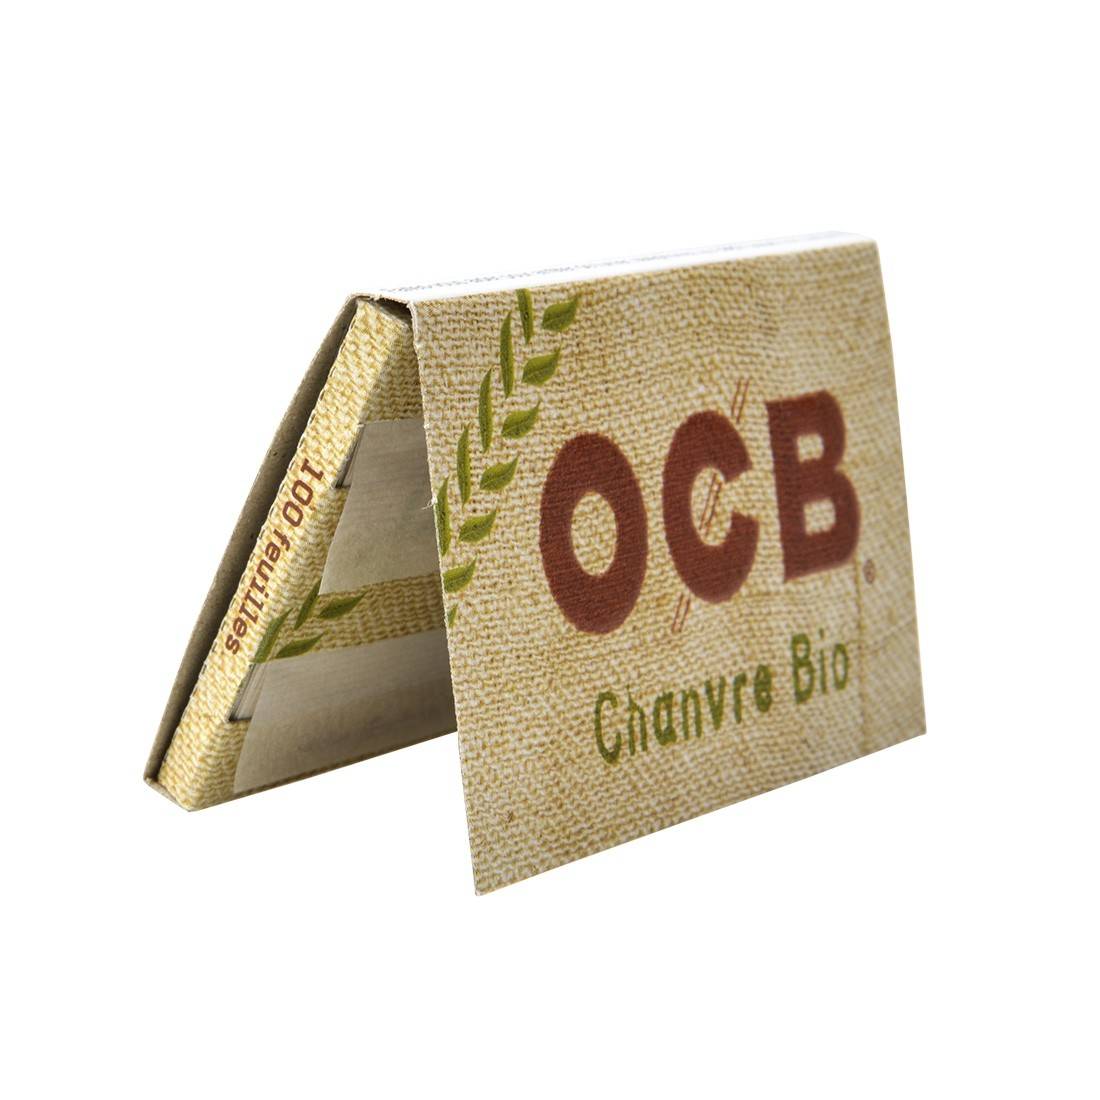 Papier à rouler OCB Chanvre Bio x 10 - 7,90€